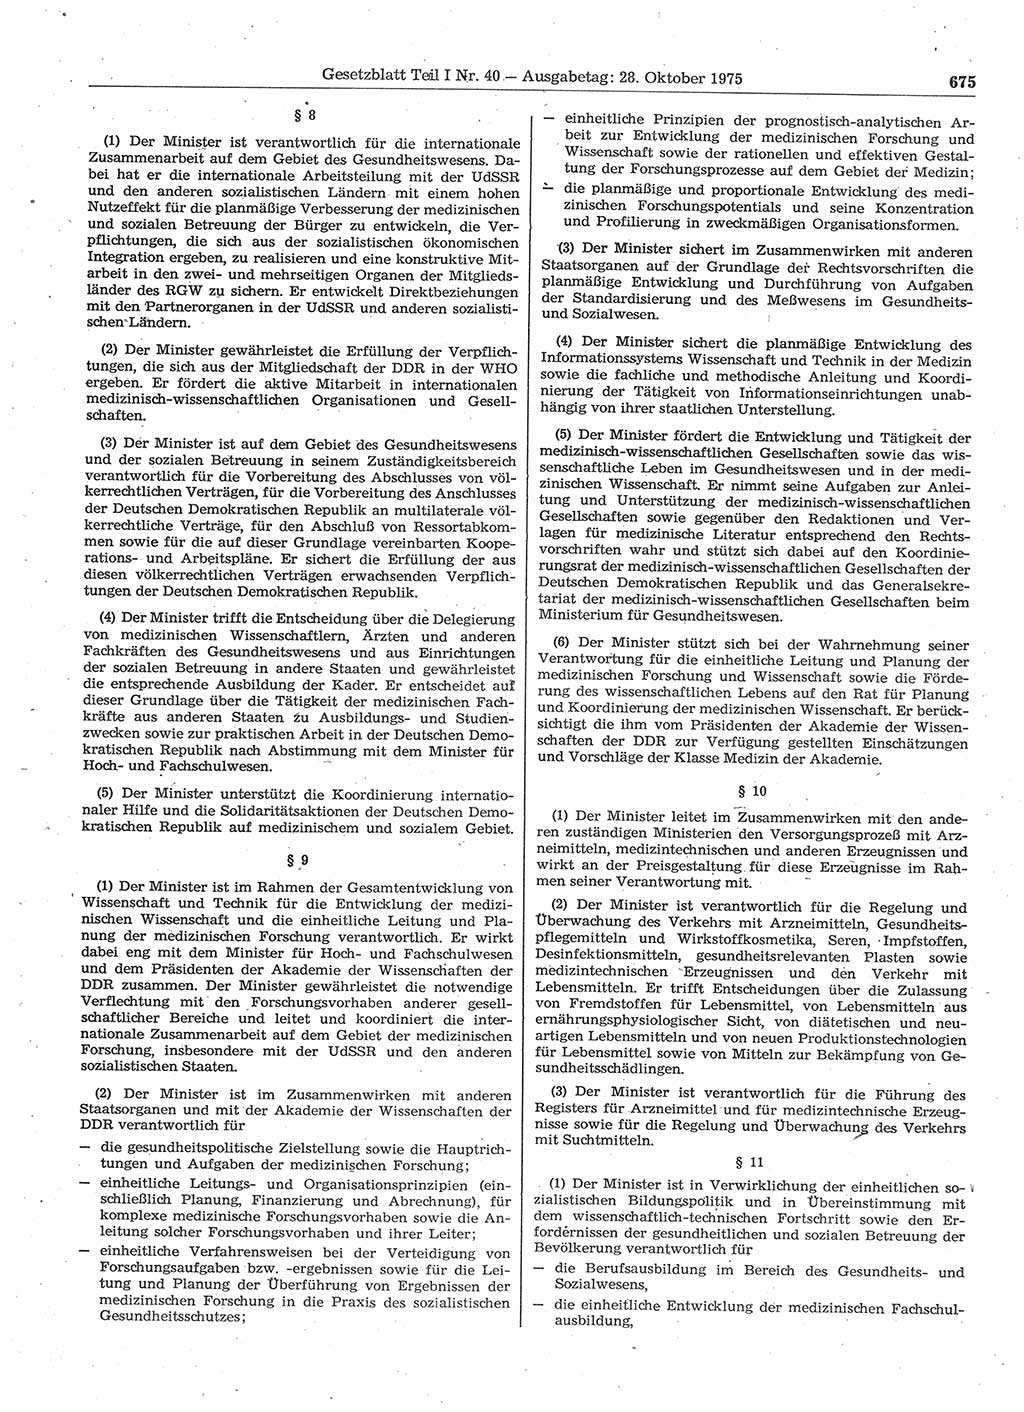 Gesetzblatt (GBl.) der Deutschen Demokratischen Republik (DDR) Teil Ⅰ 1975, Seite 675 (GBl. DDR Ⅰ 1975, S. 675)